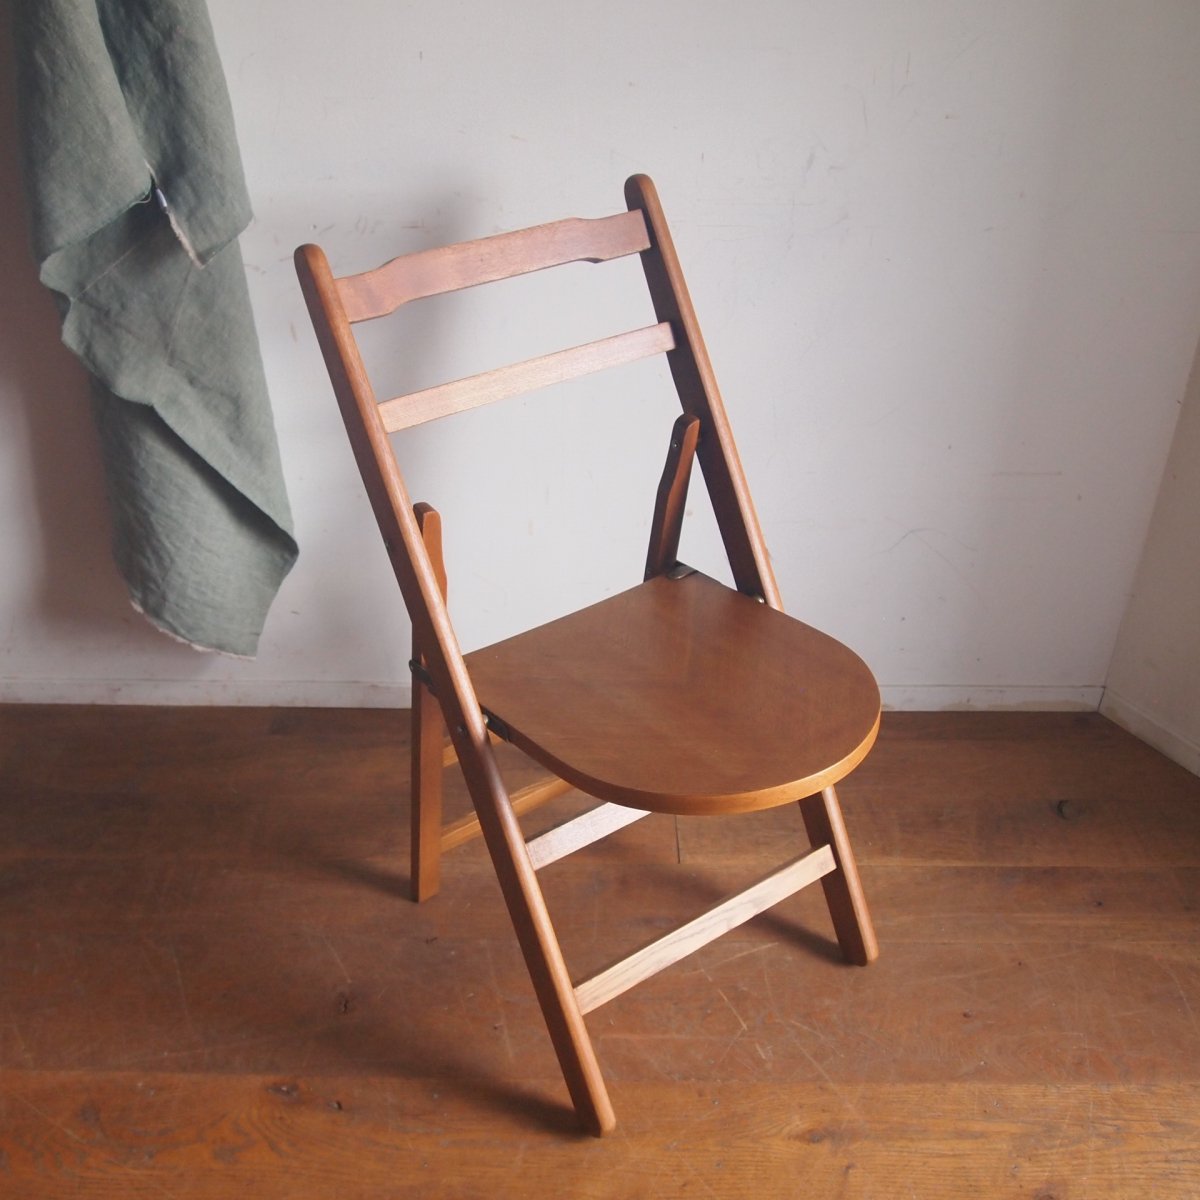  折り畳み椅子